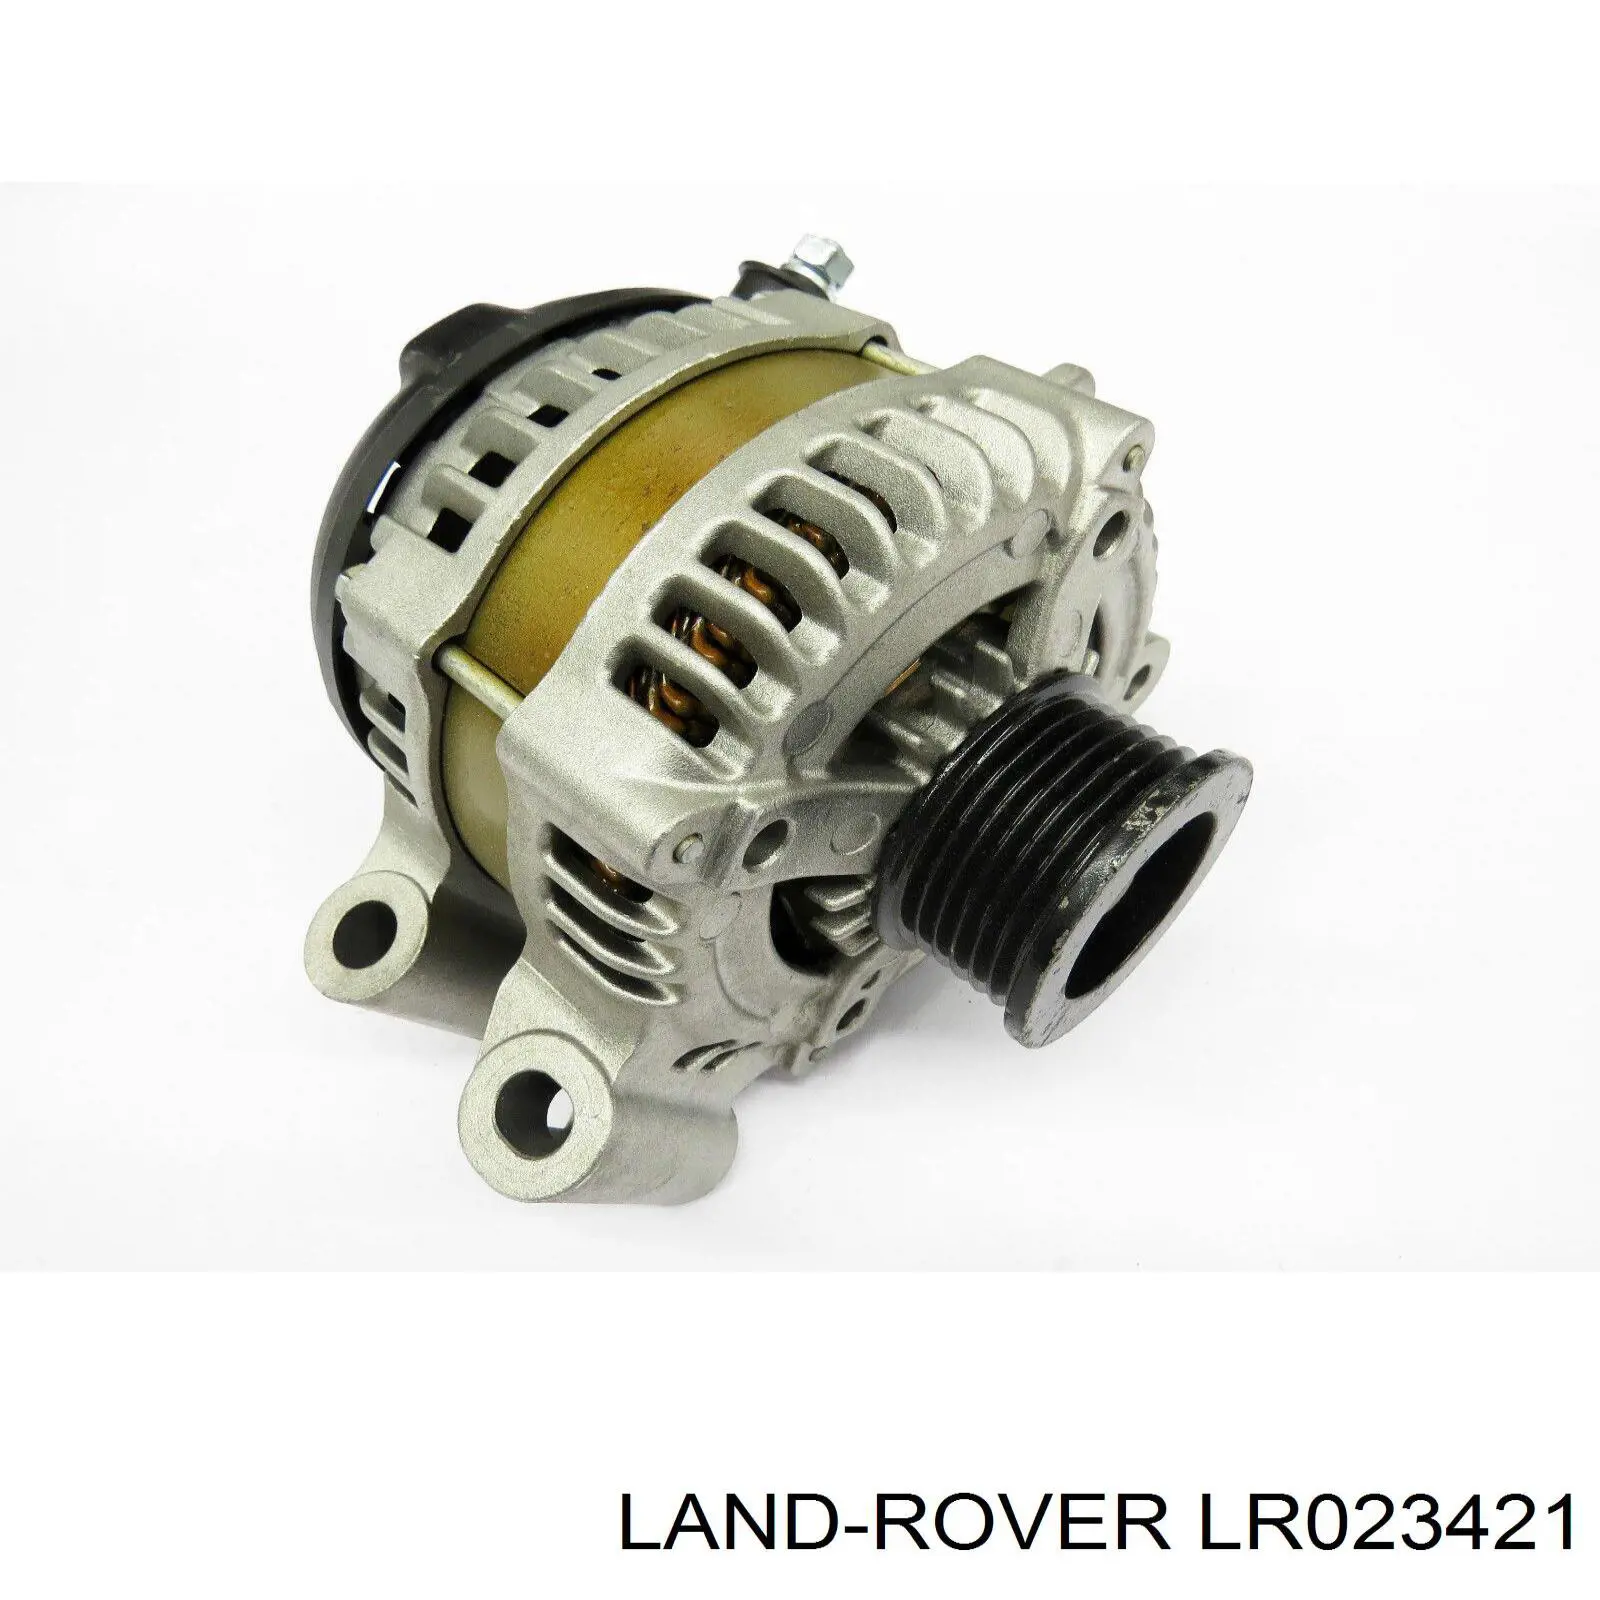 LR023421 Land Rover gerador